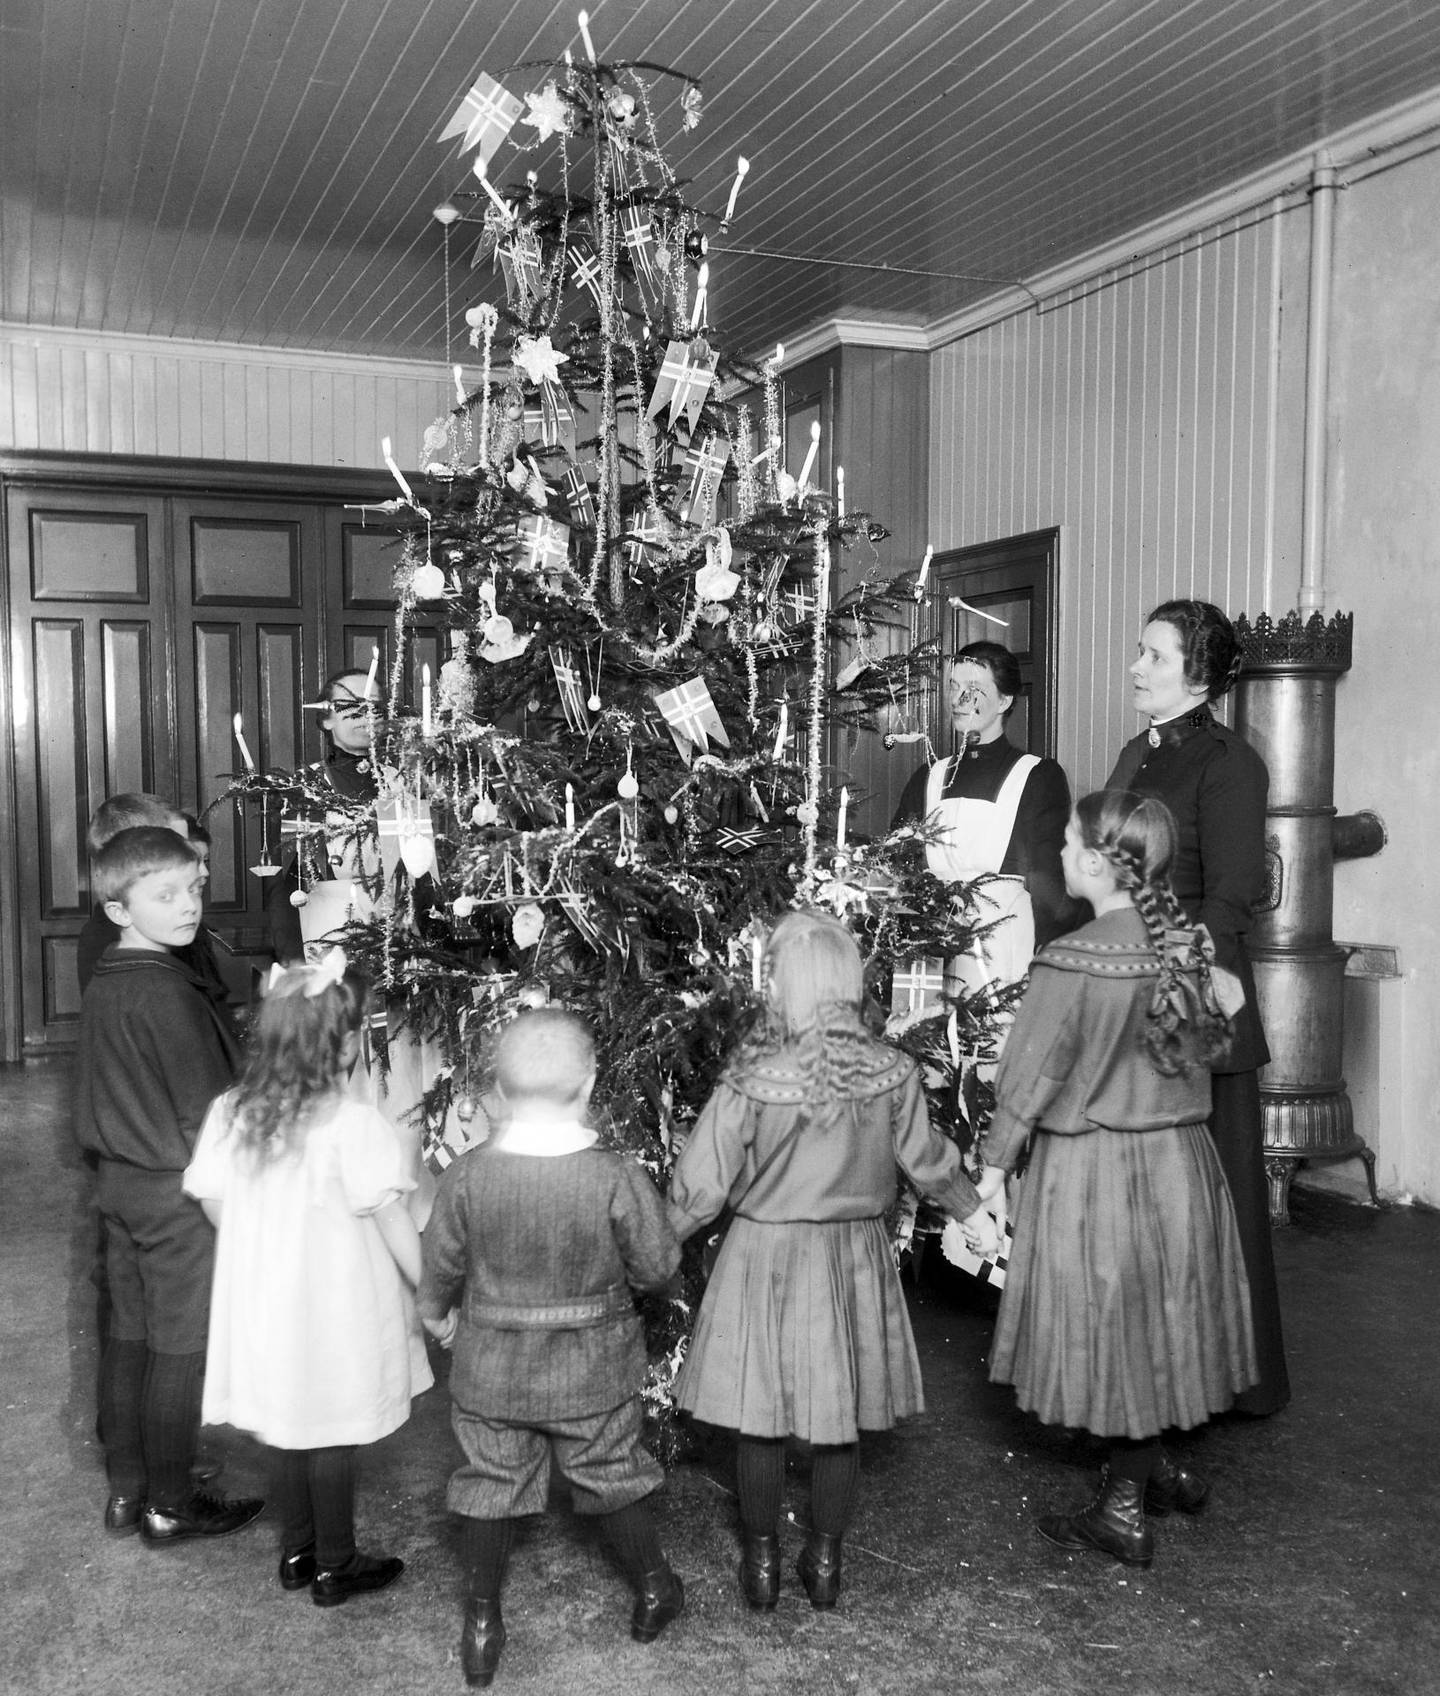 Juletreet tennes på Frelsesarmeens barnehjem i 1911. Gjennom skoler og institusjoner ble juletreet en vanlig tradisjon i siste halvdel av 1800-tallet. Foto: Anders B. Wilse, Oslo Museum